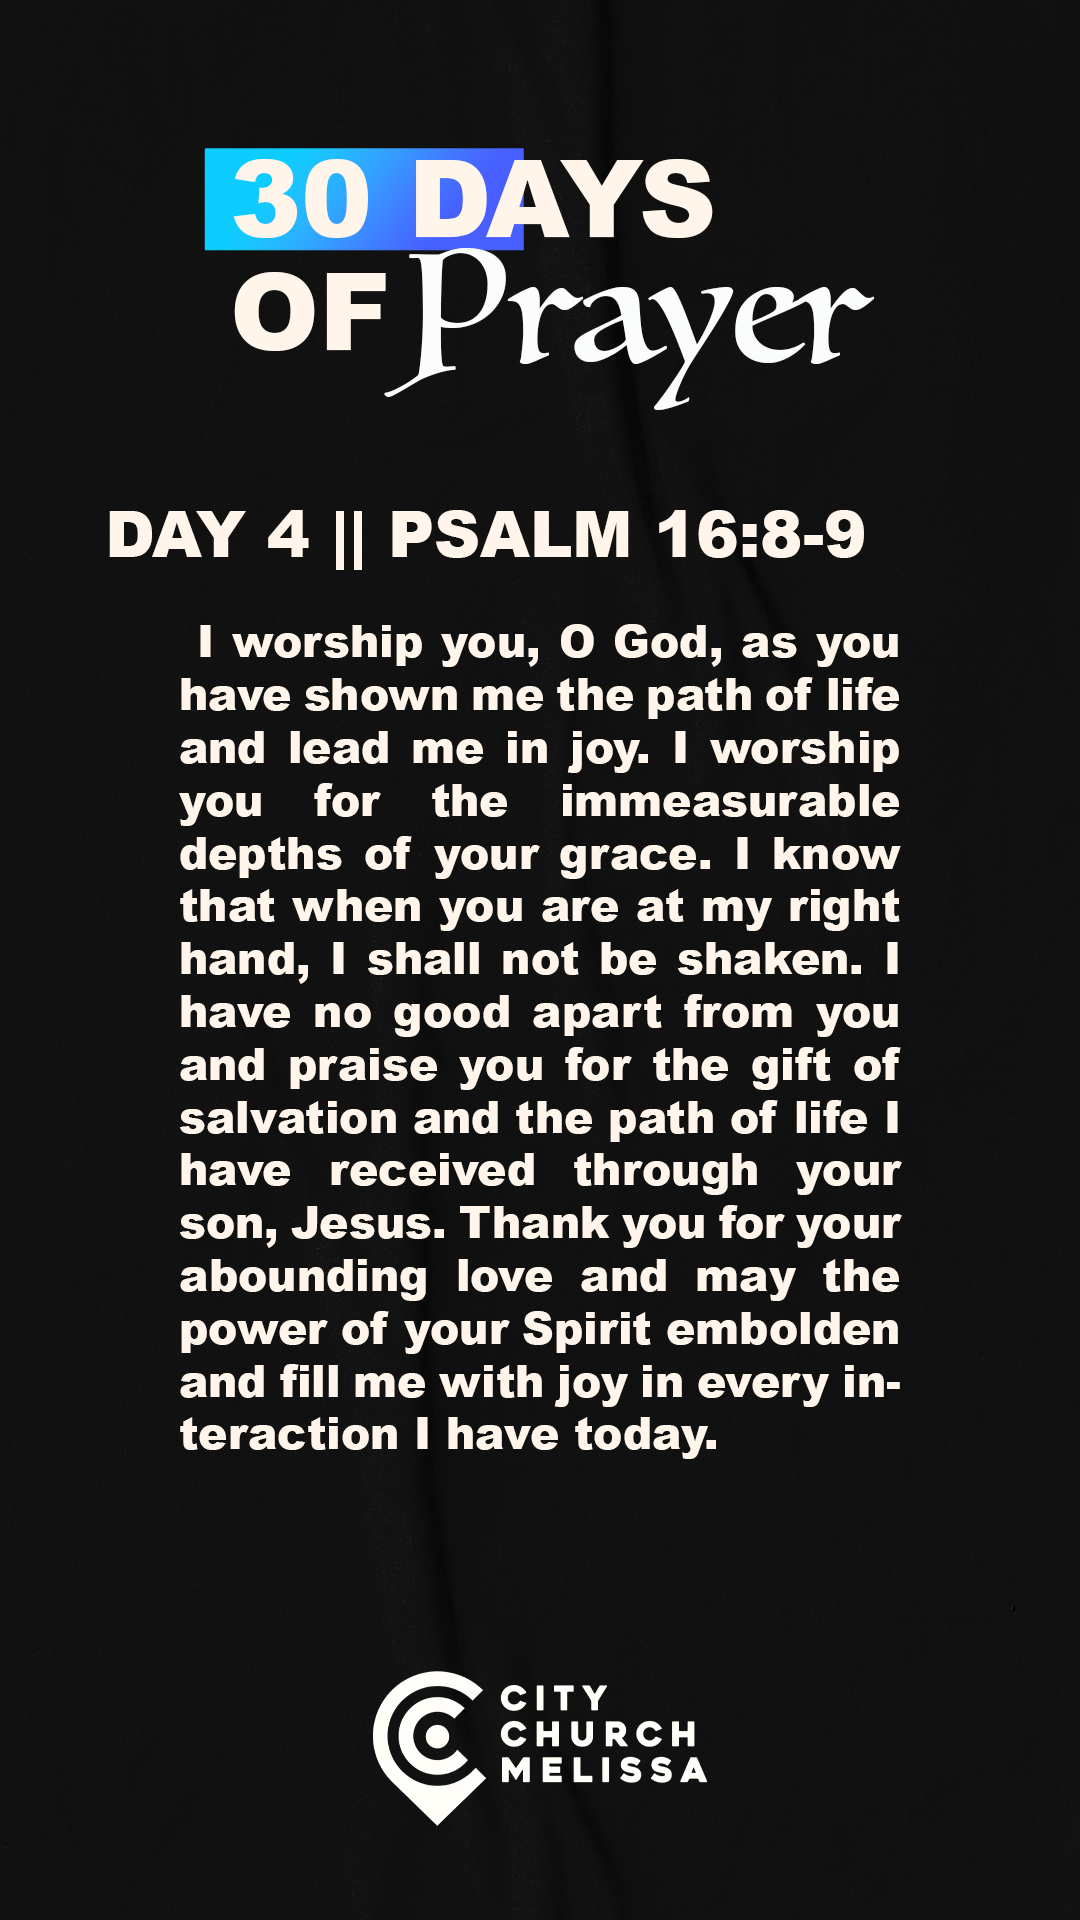 DAY 4 - PRAYER